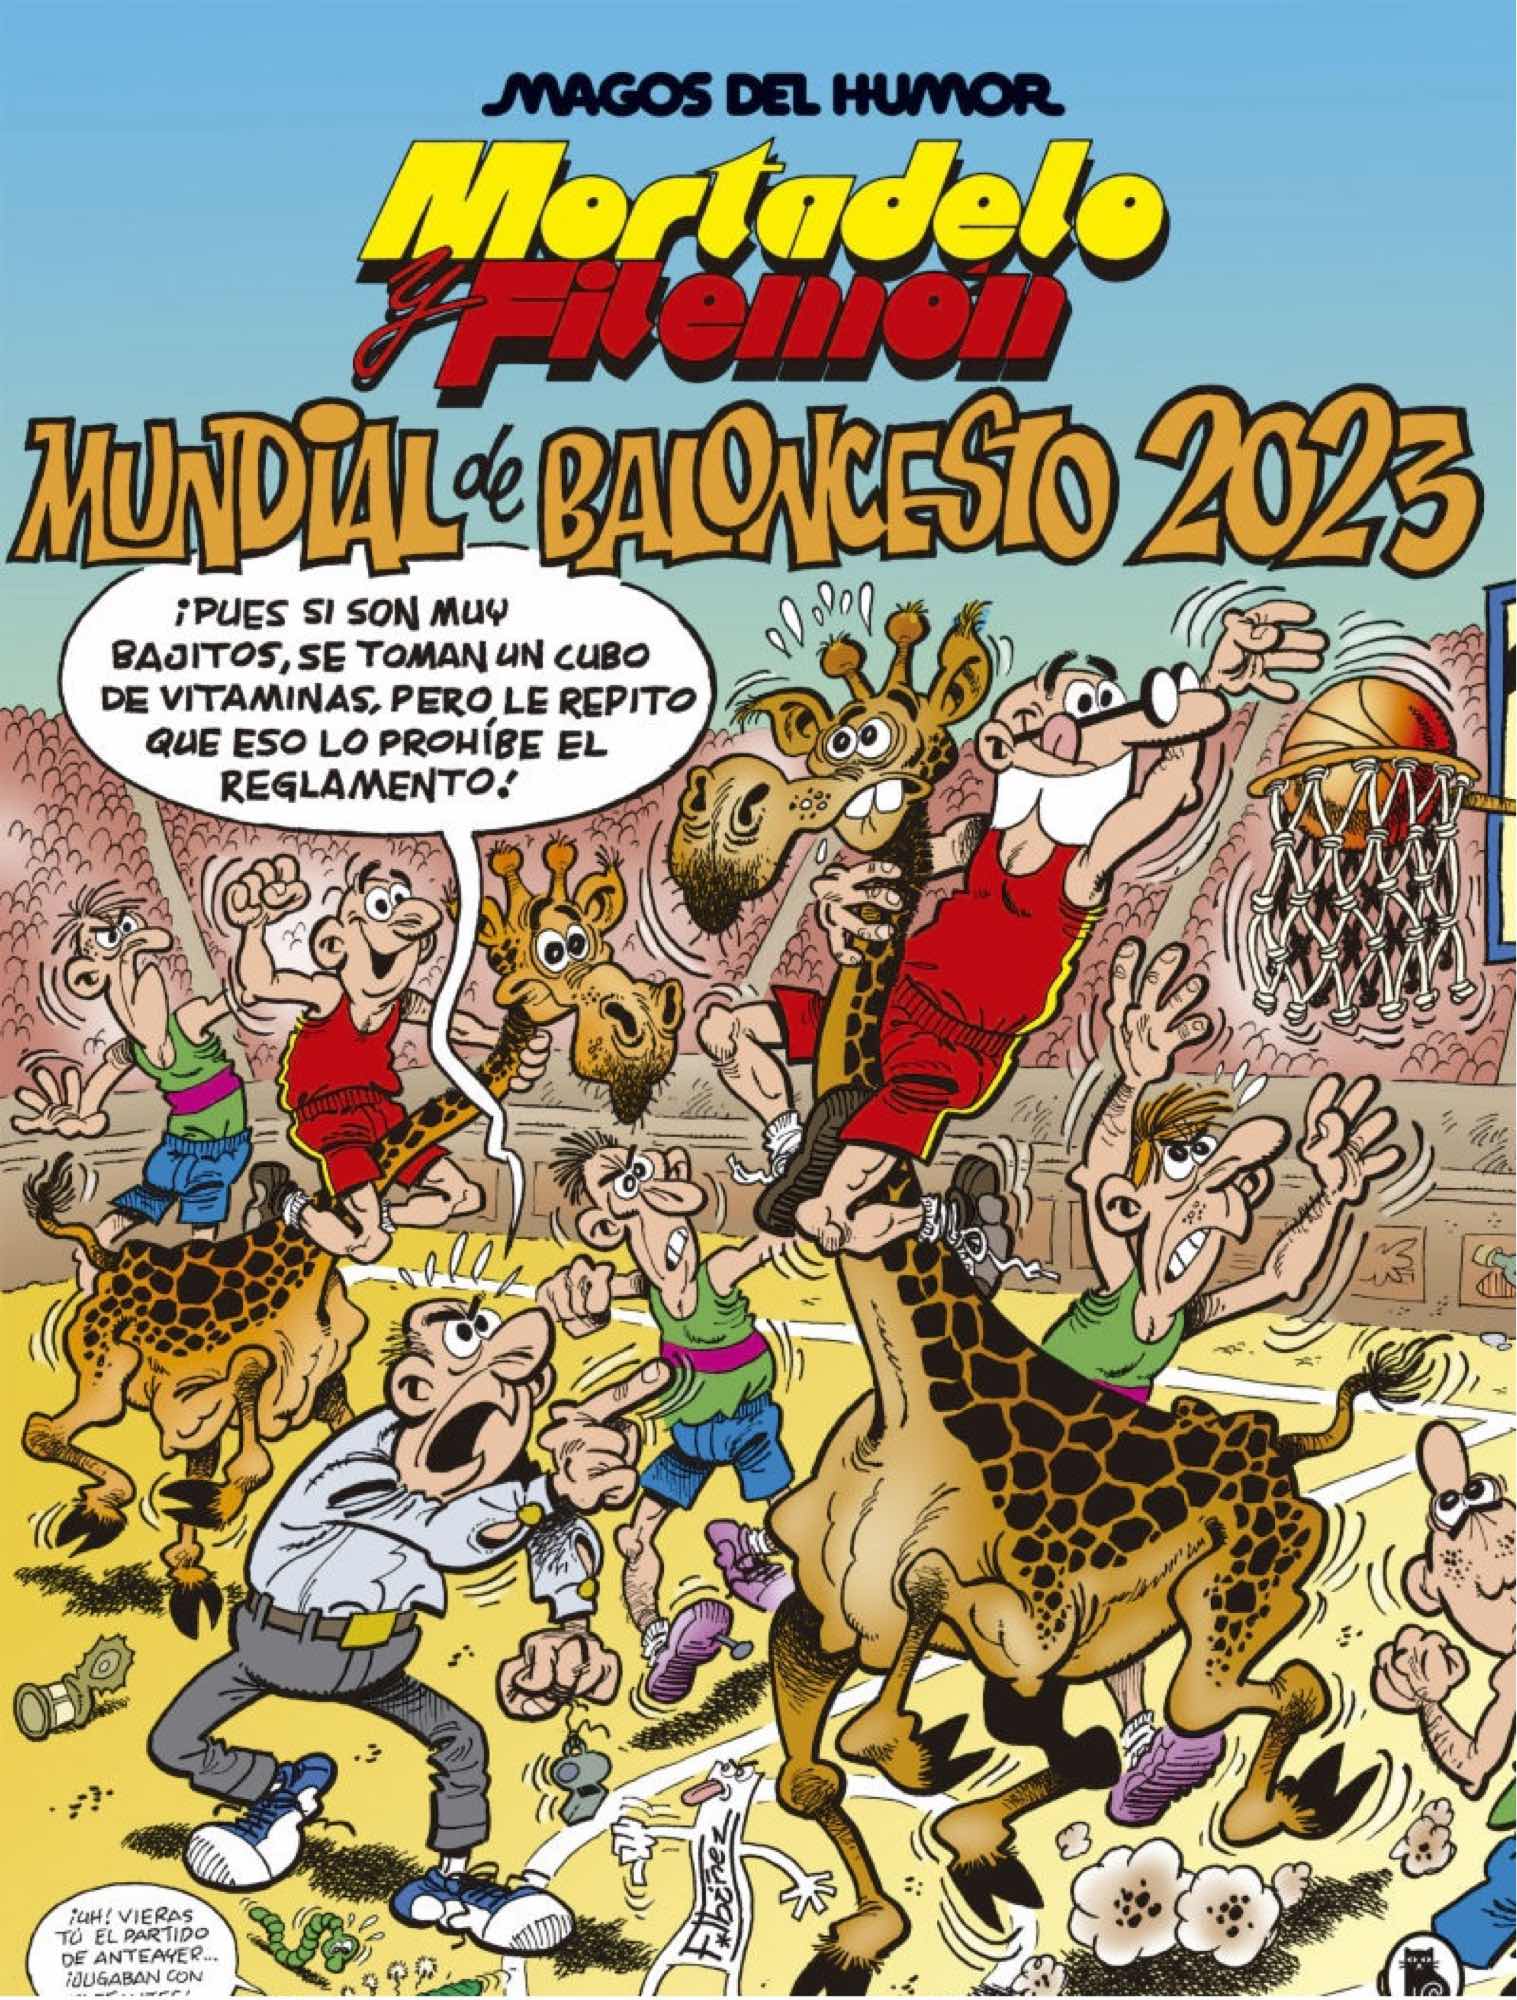 MAGOS DEL HUMOR 219: MUNDIAL DE BALONCESTO 2023 (MORTADELO Y FILEMON)